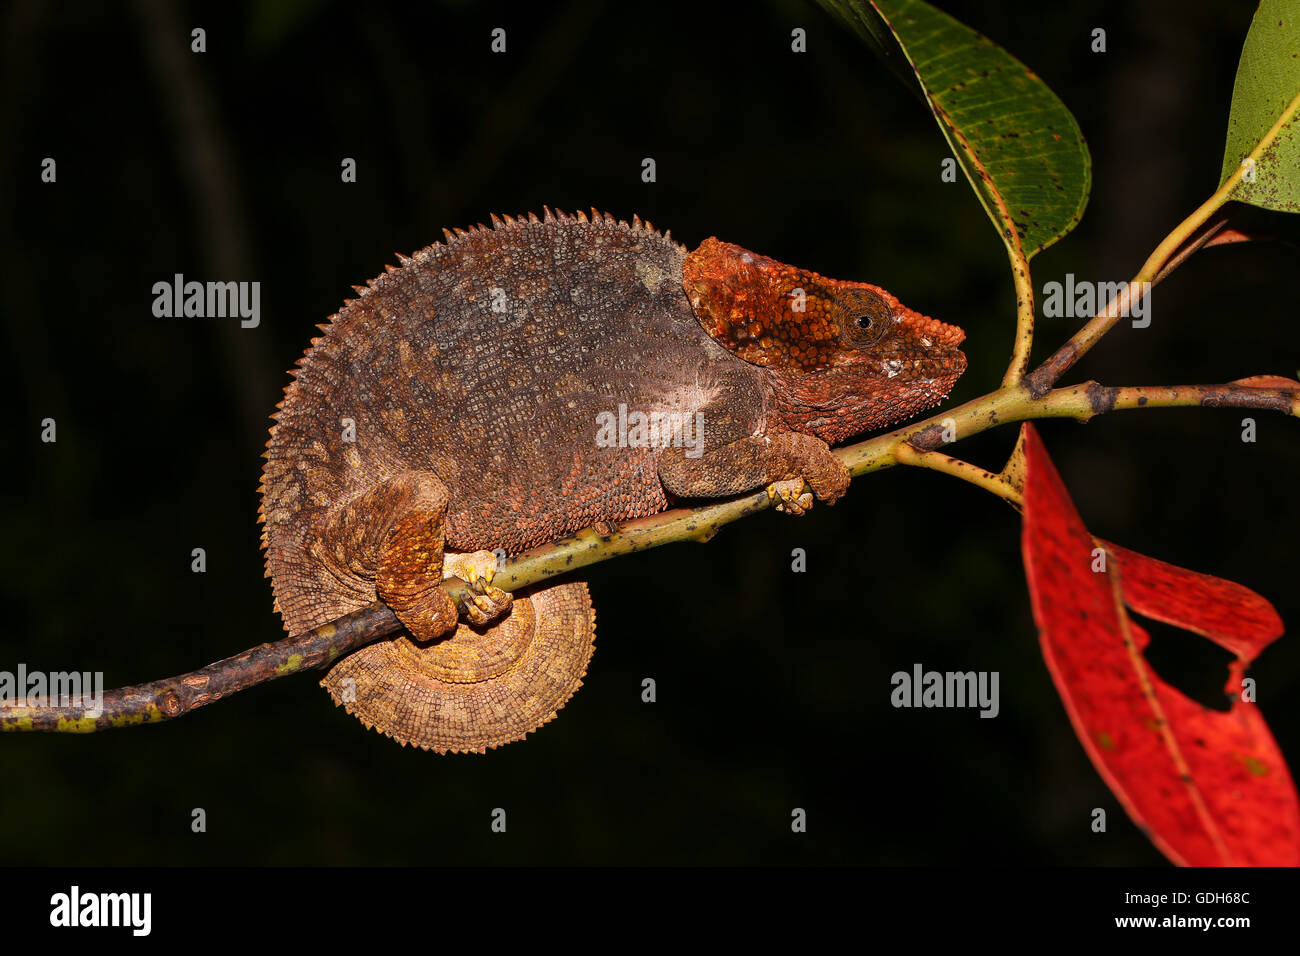 Short-horned chameleon (Calumma brevicorne) female, Analamazoatra, Andasibe-Mantadia National Park, eastern Madagascar Stock Photo